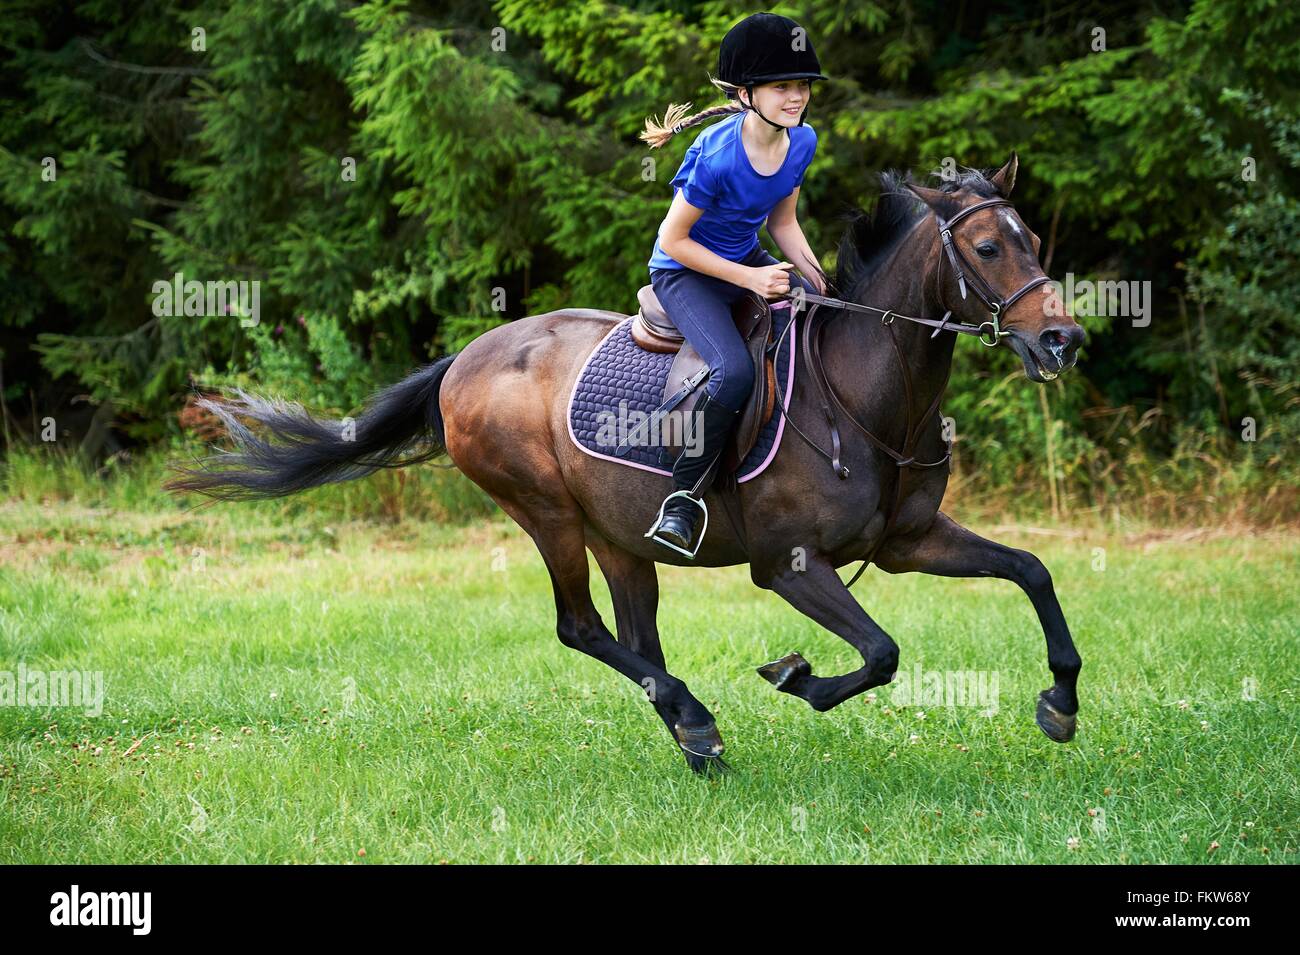 Vista lateral de la chica que llevaba un sombrero de montar a caballo al galope Foto de stock